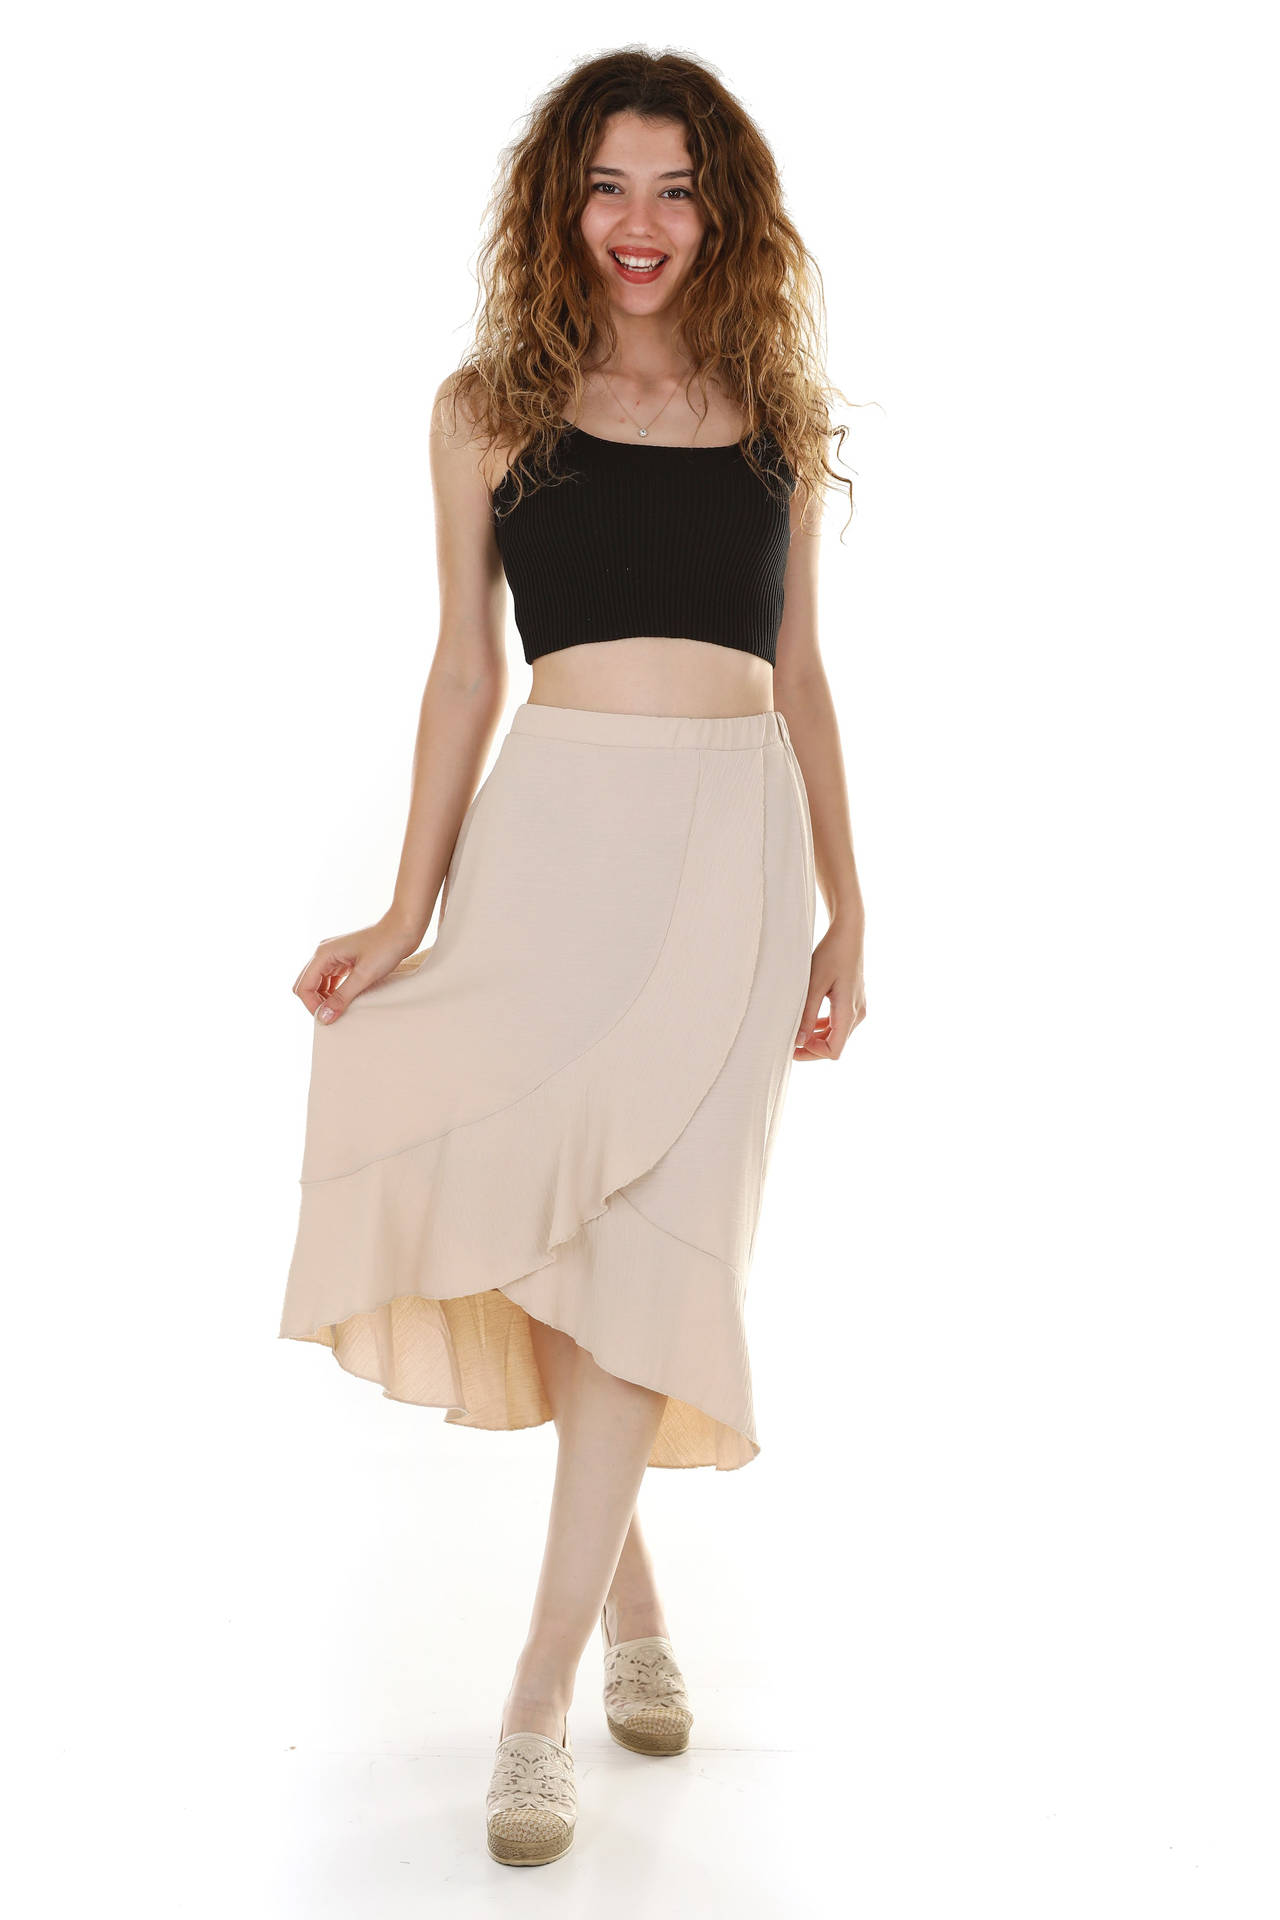 Female Model With Flowy Skirt Wallpaper